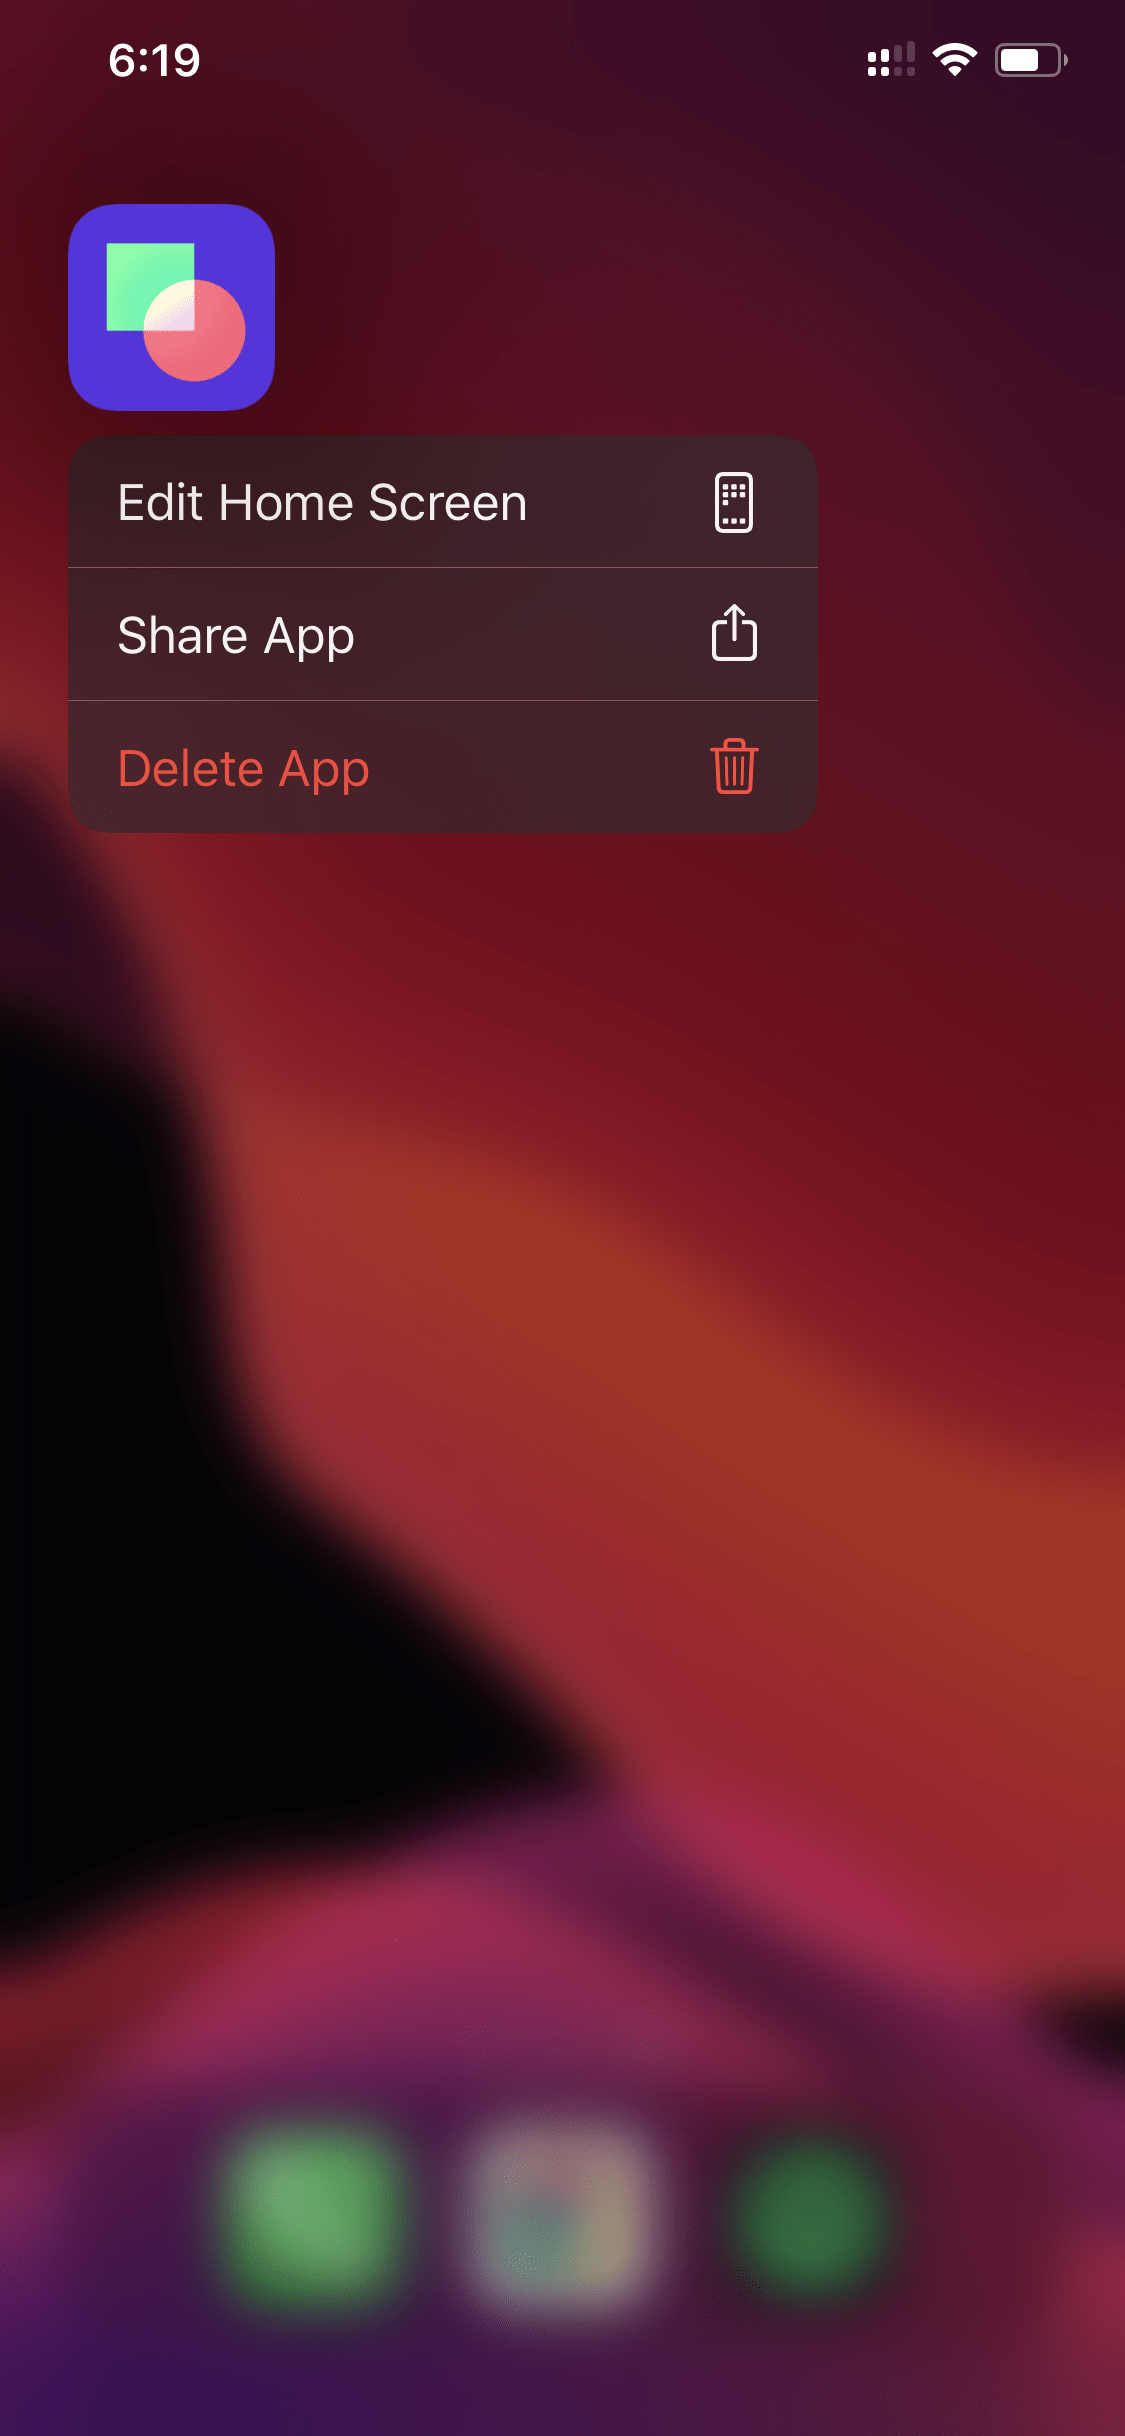 Byte app not working